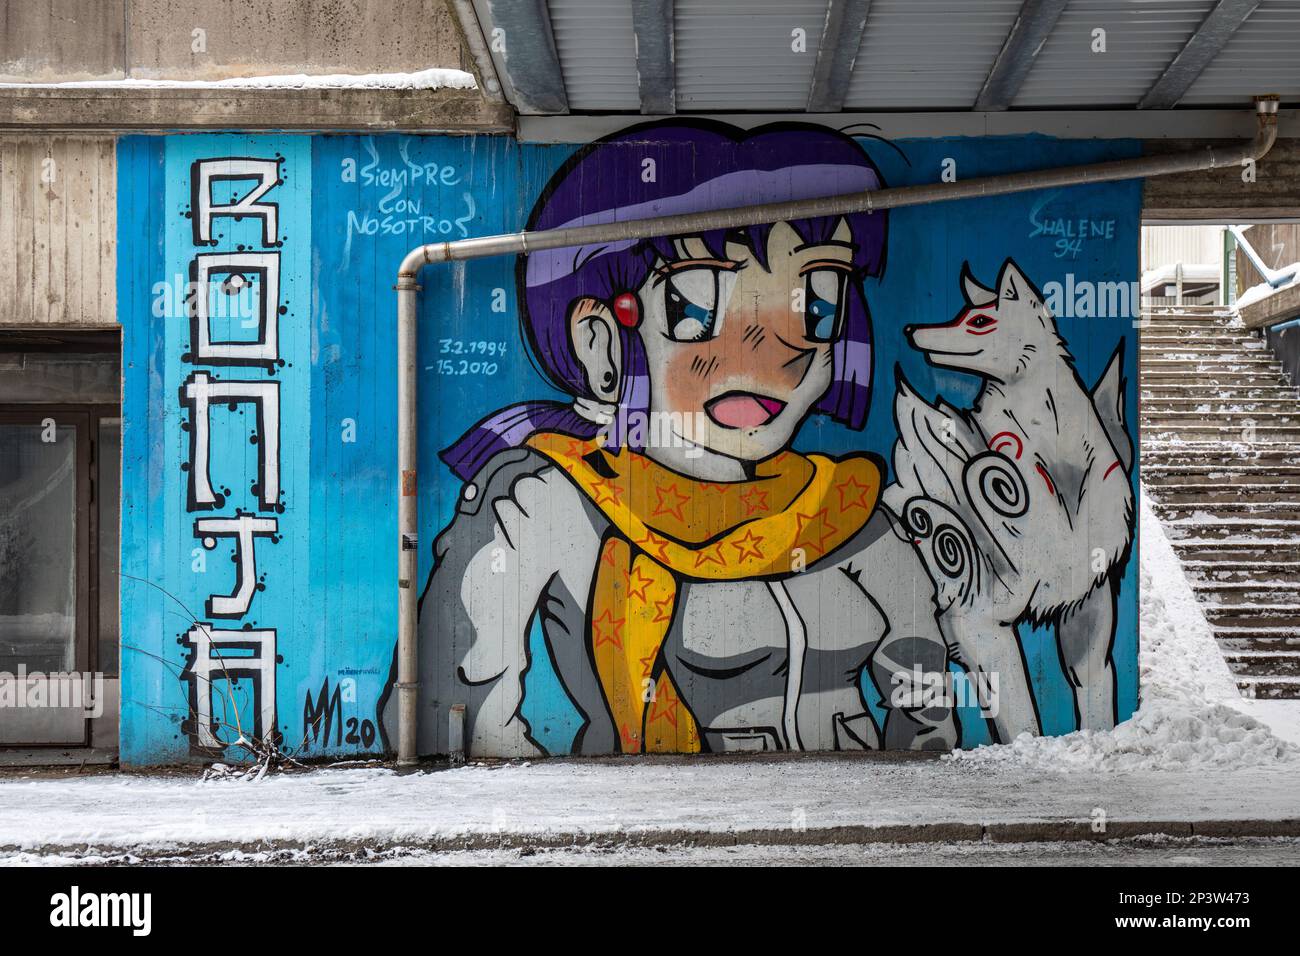 Street art à usage éditorial exclusif. Graffiti mural d'Antti Männynväli sur un mur en béton dans le quartier Itä-Pasila d'Helsinki, en Finlande. Banque D'Images